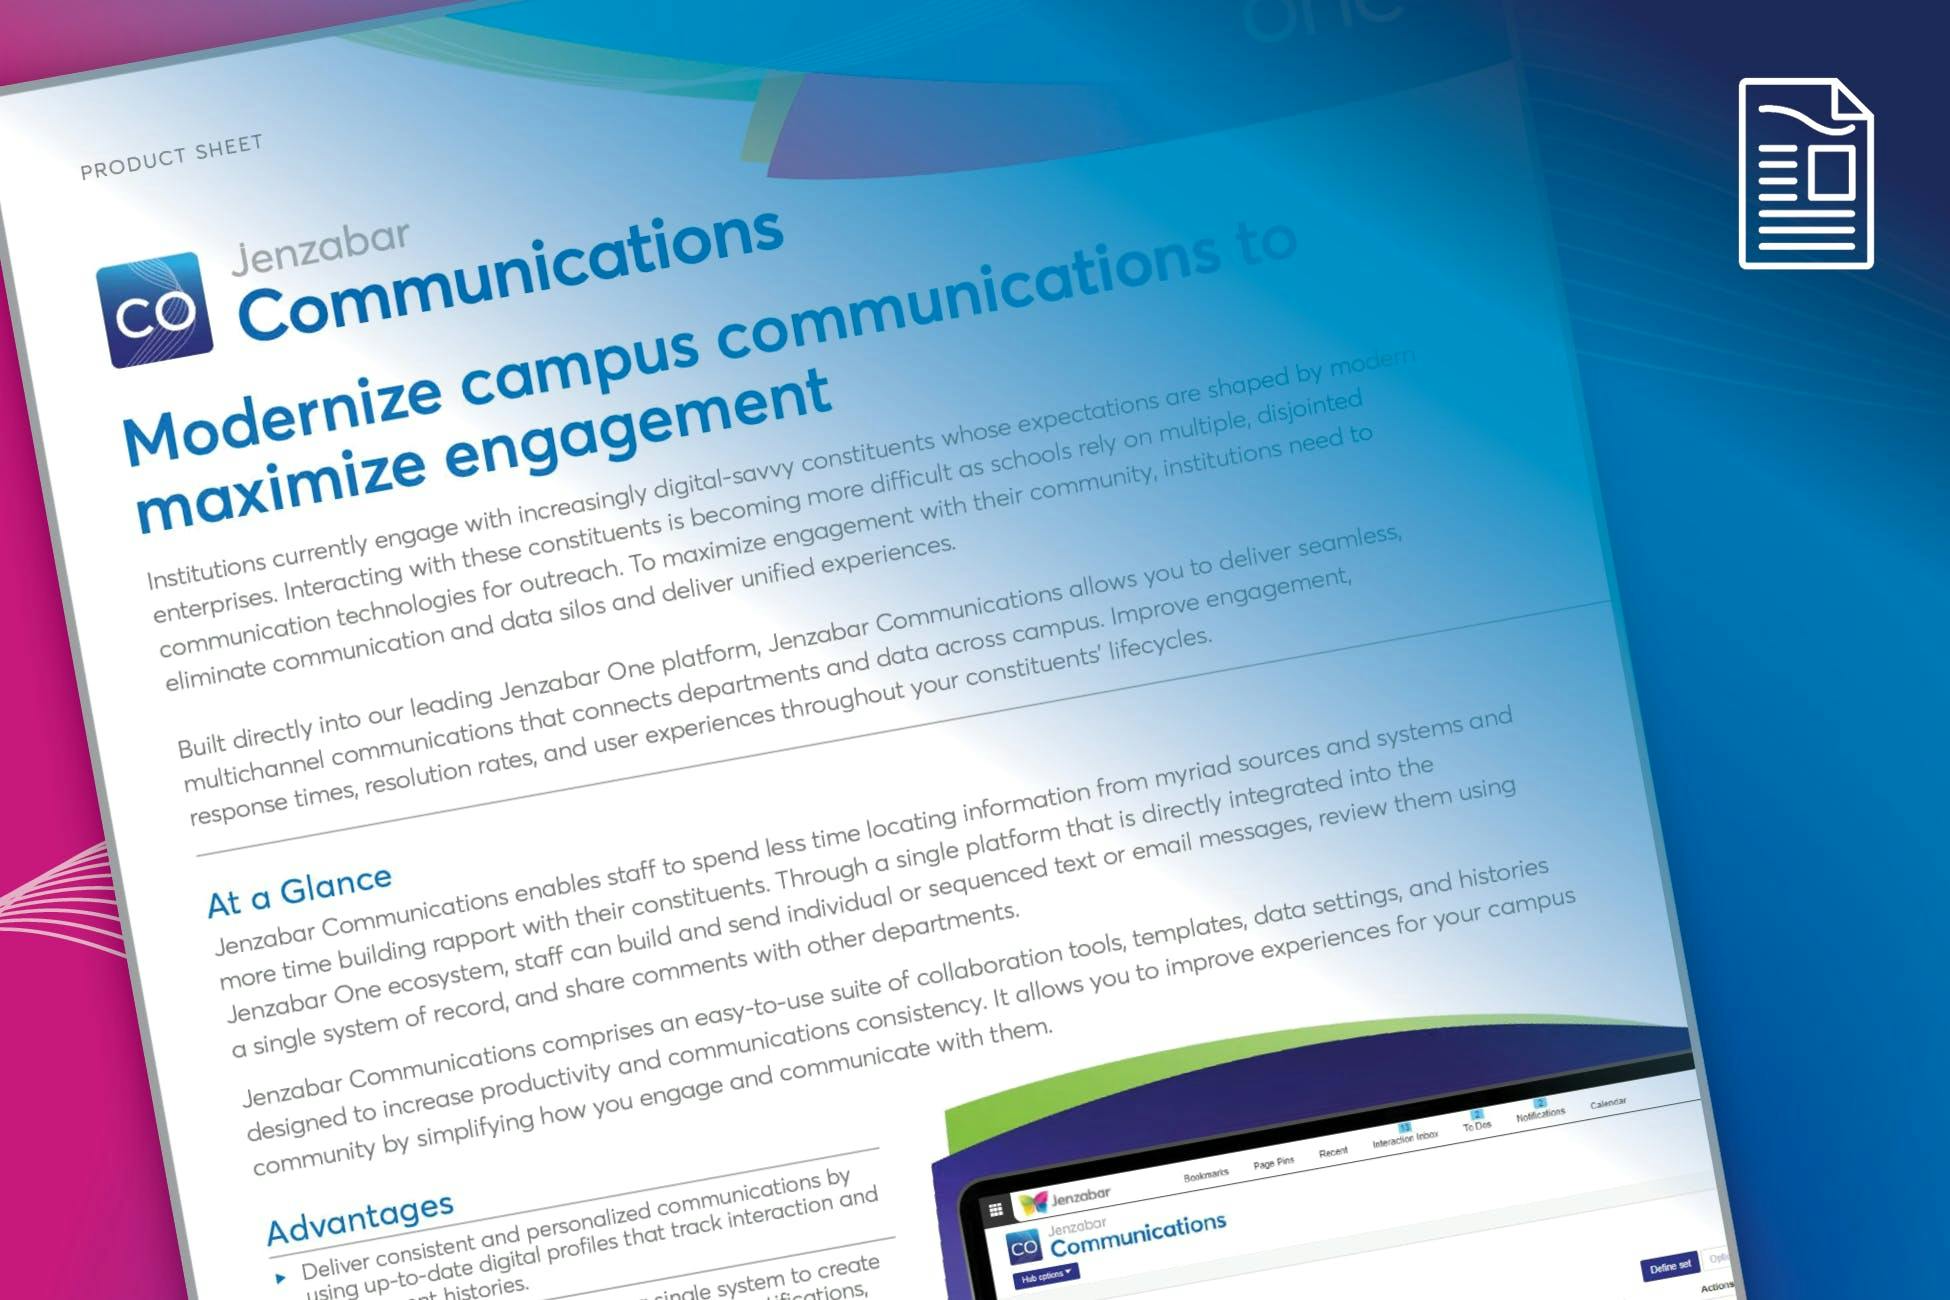 Product Sheet: Jenzabar Communications